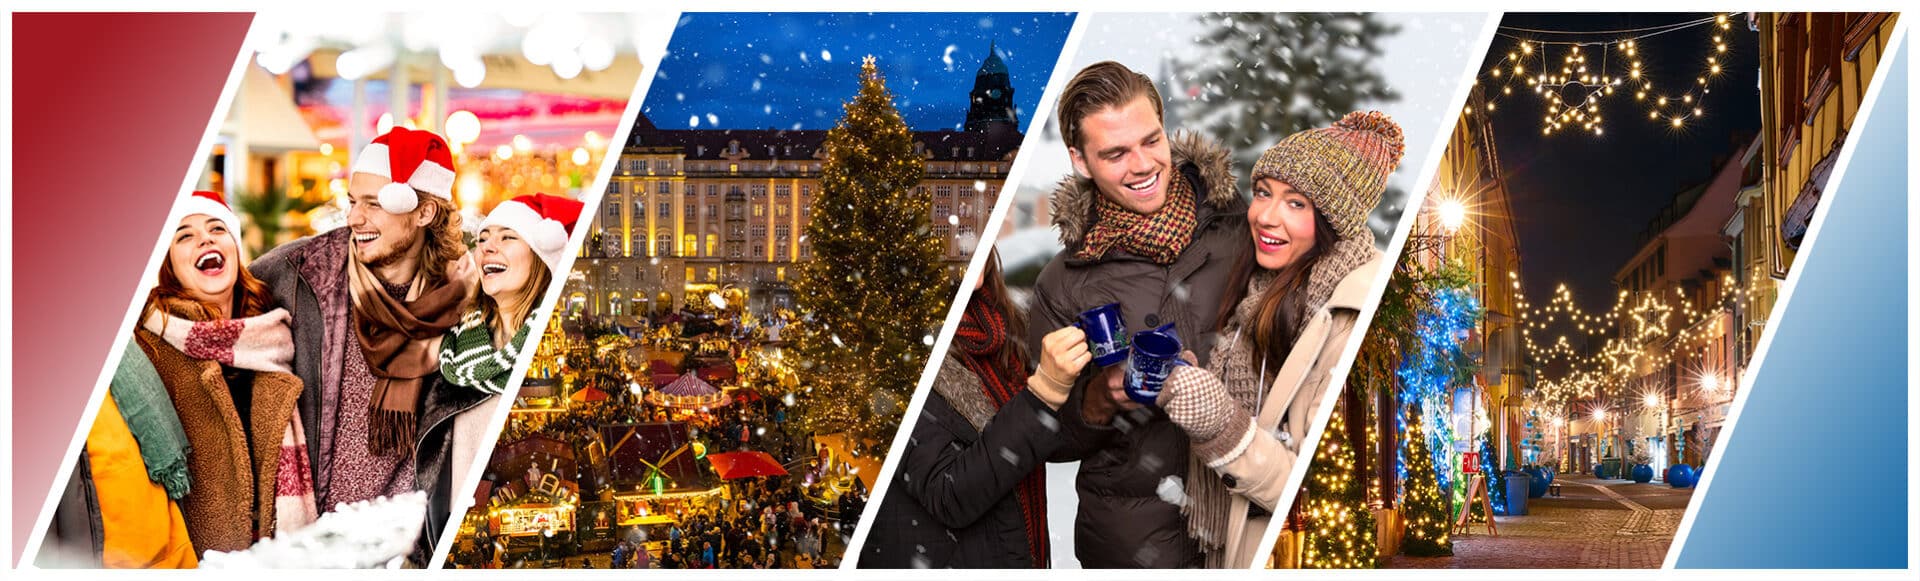 Weihnachtsfeier Innsbruck